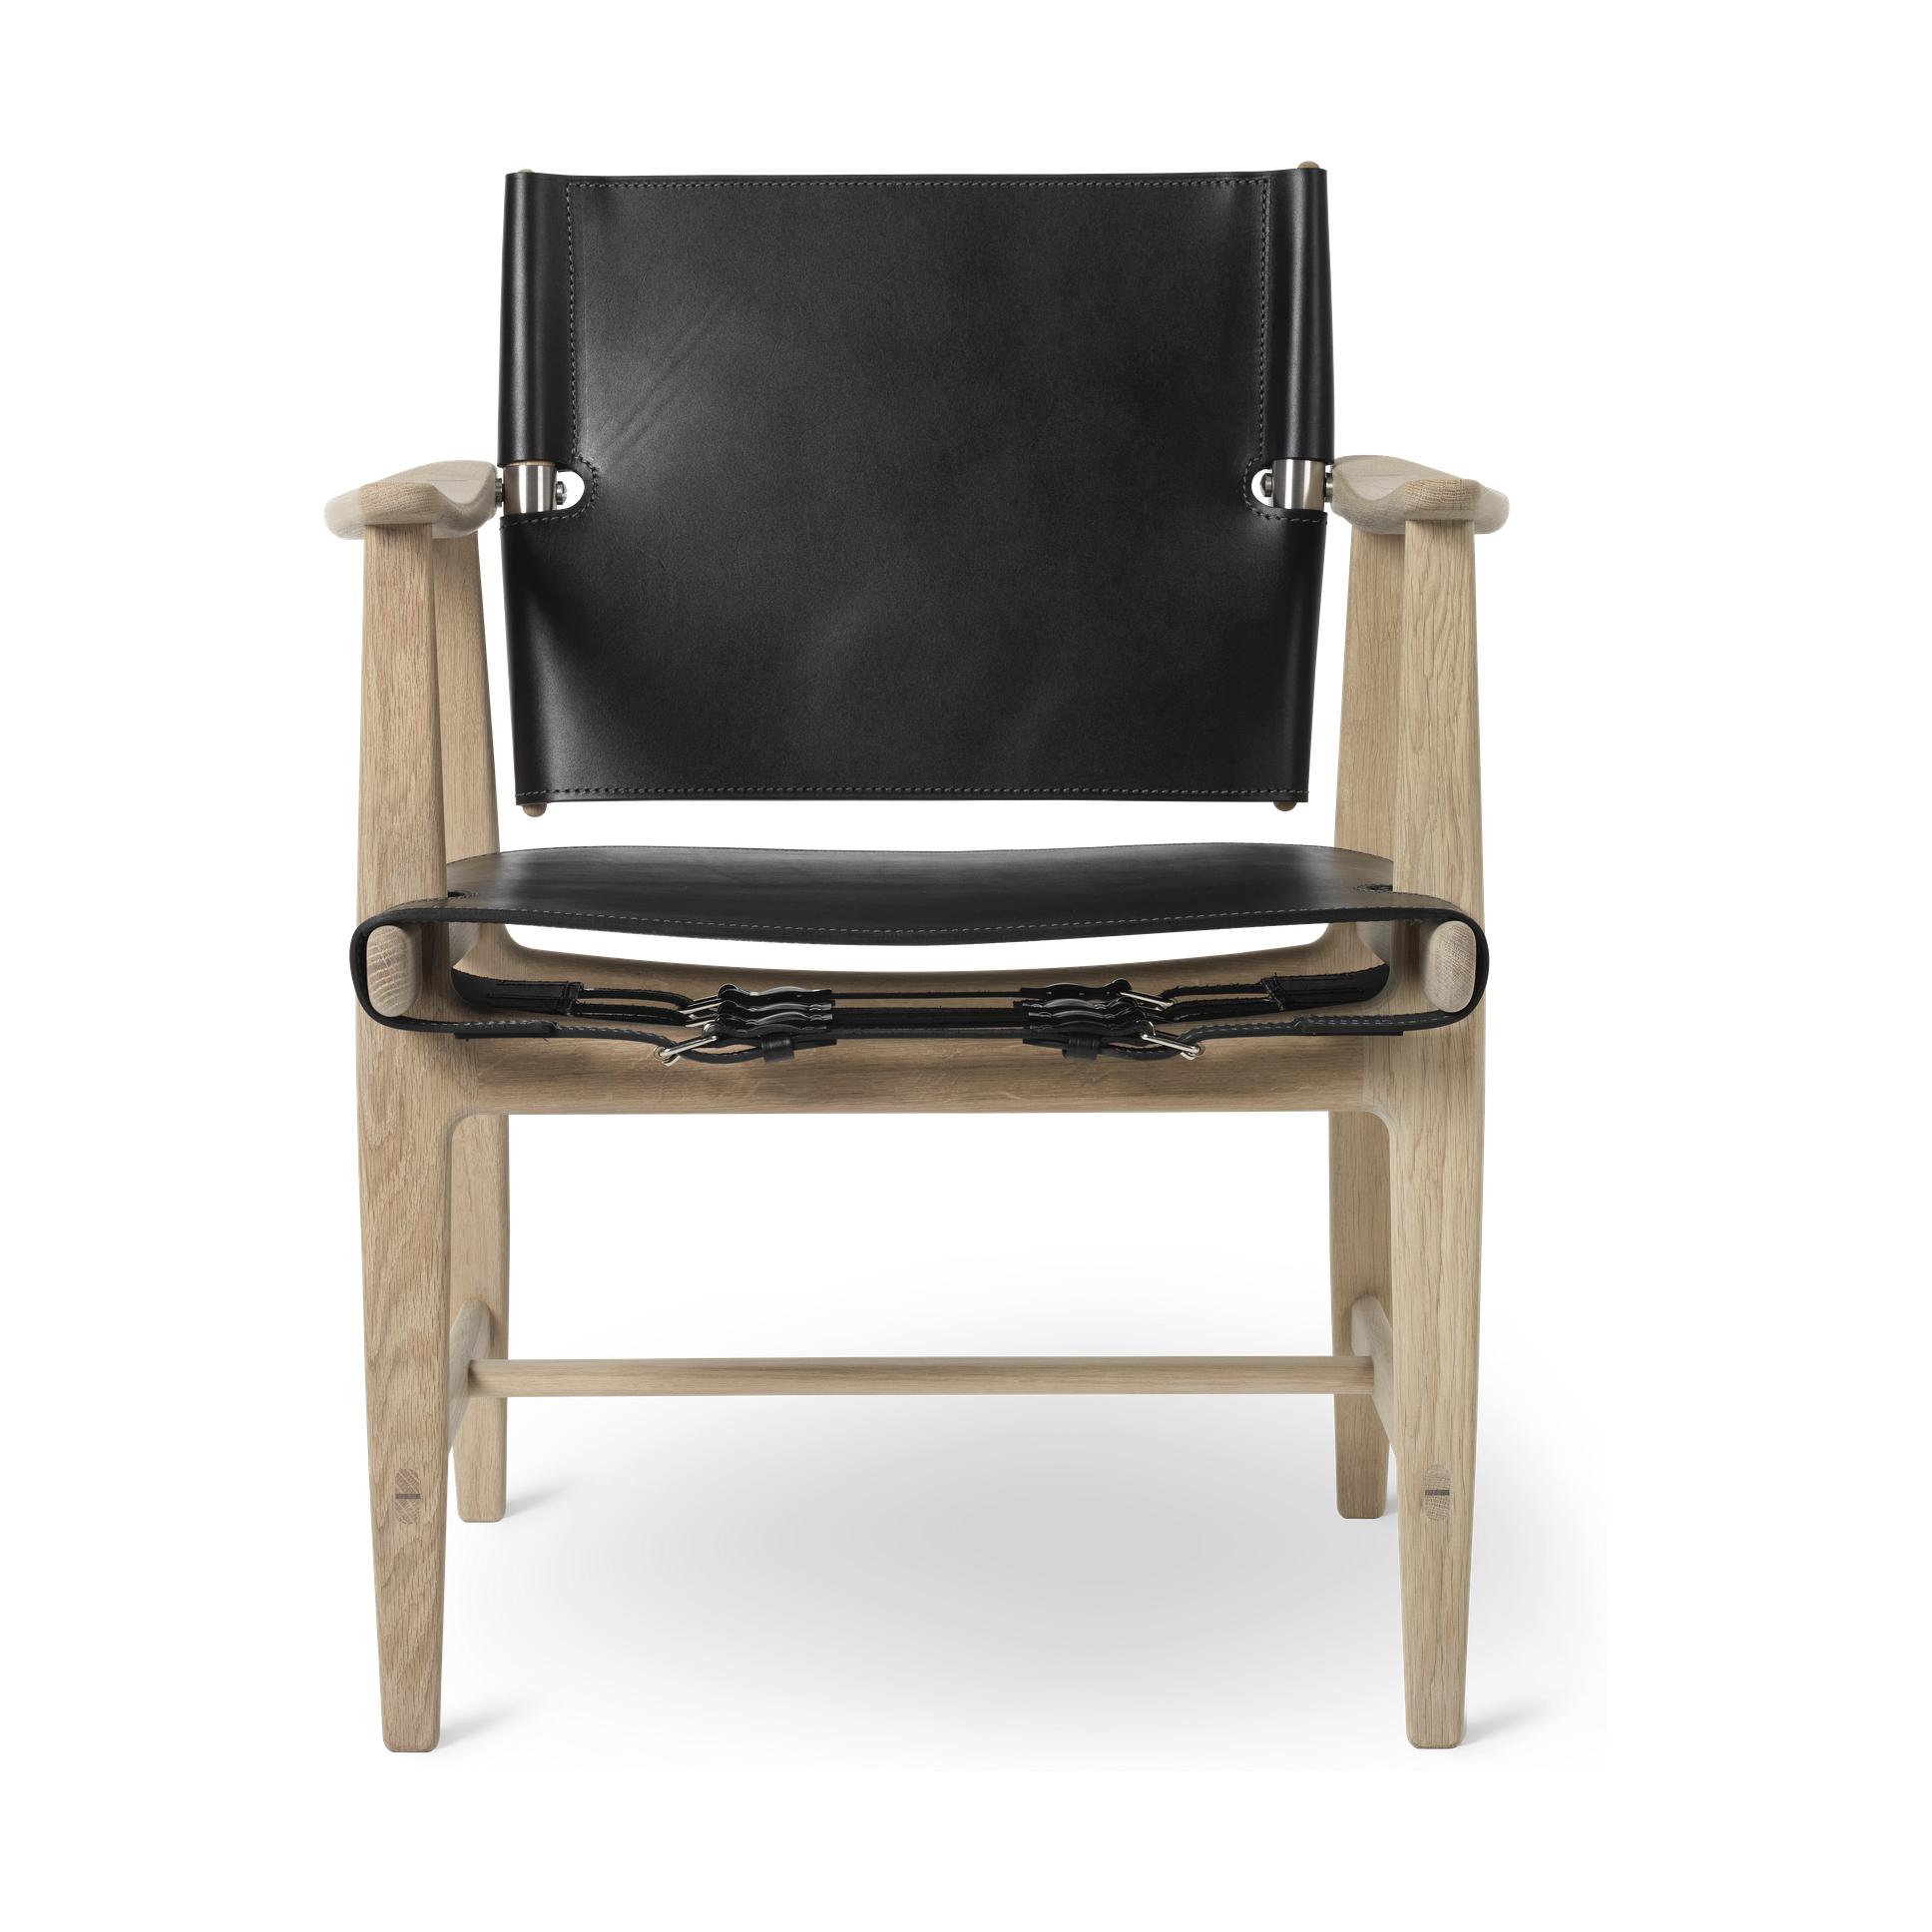 Carl Hansen Bm1106 Huntsman Chair, White Oiled Oak/Black Leather